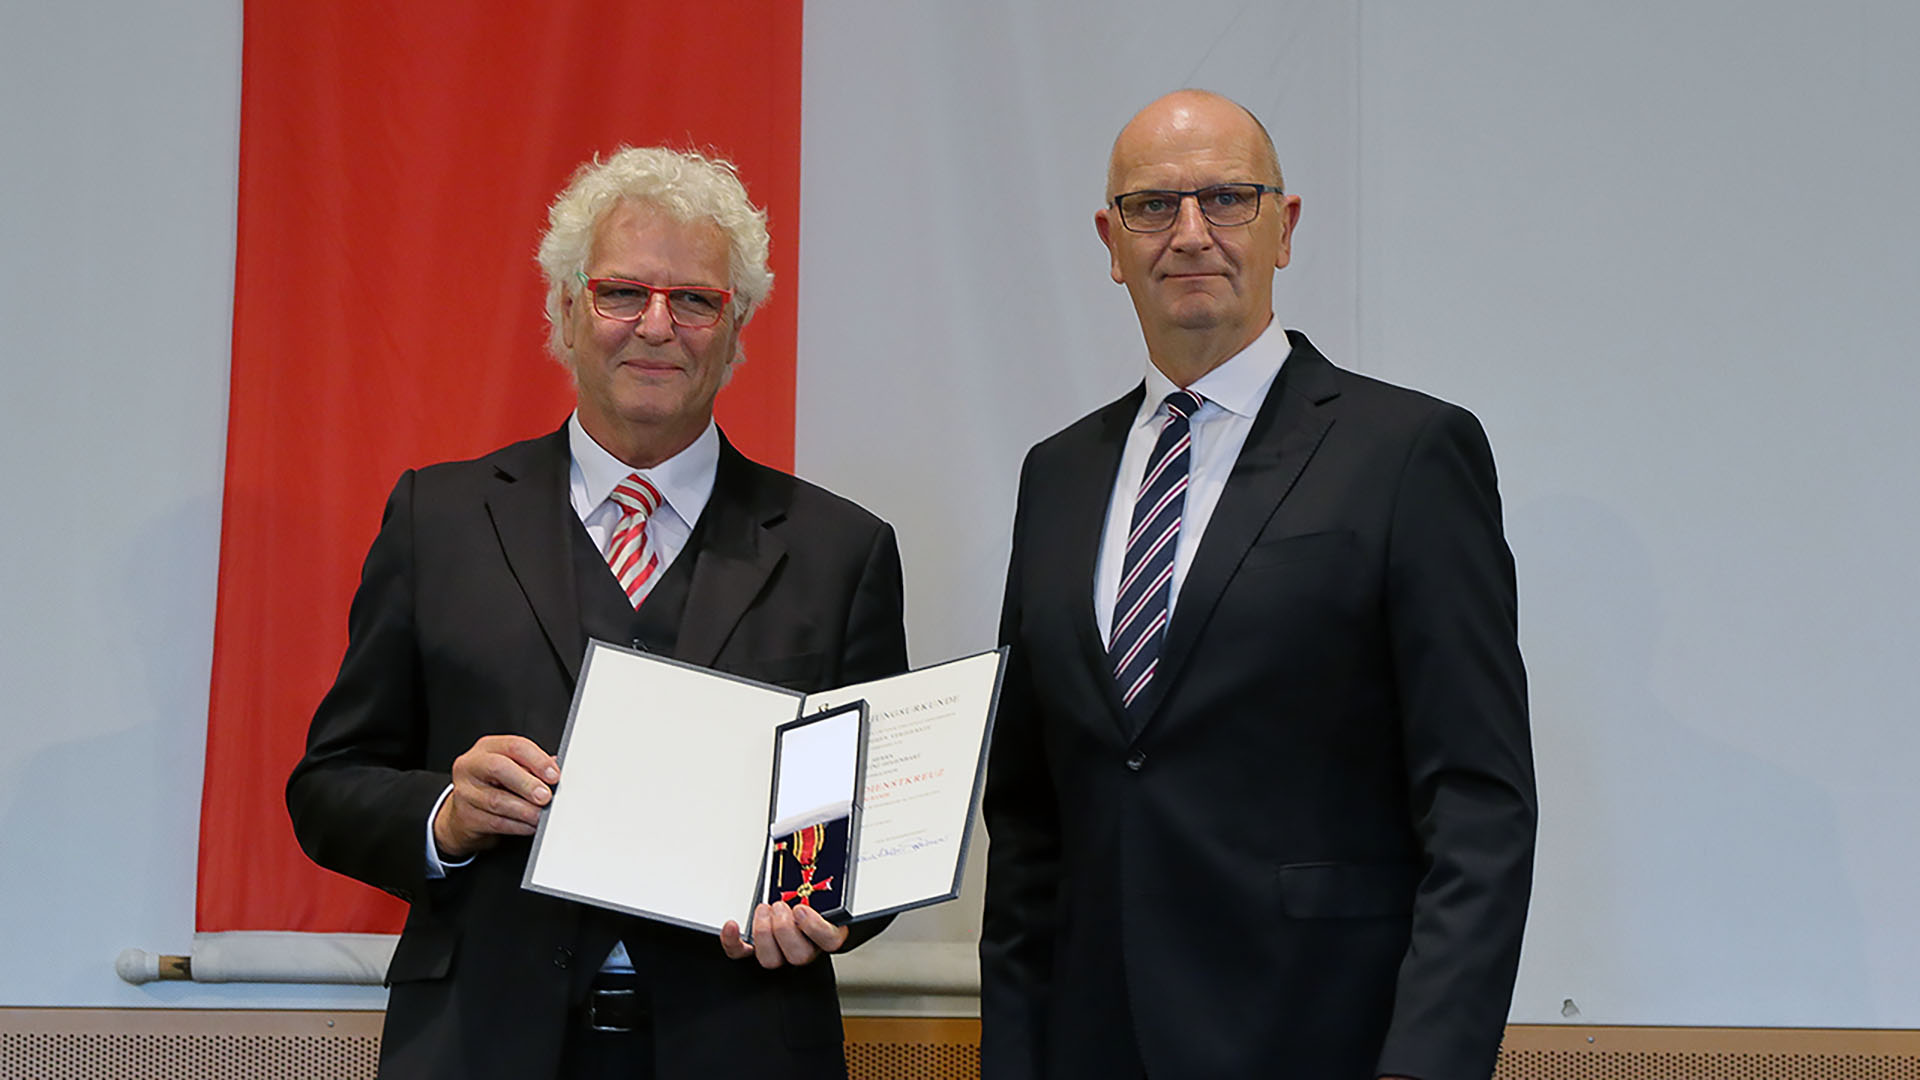 Archivbild: Karl-Heinz Hegenbart (67) mit dem Verdienstkreuz am Bande (Quelle: Volker Tanner, Staatskanzlei)